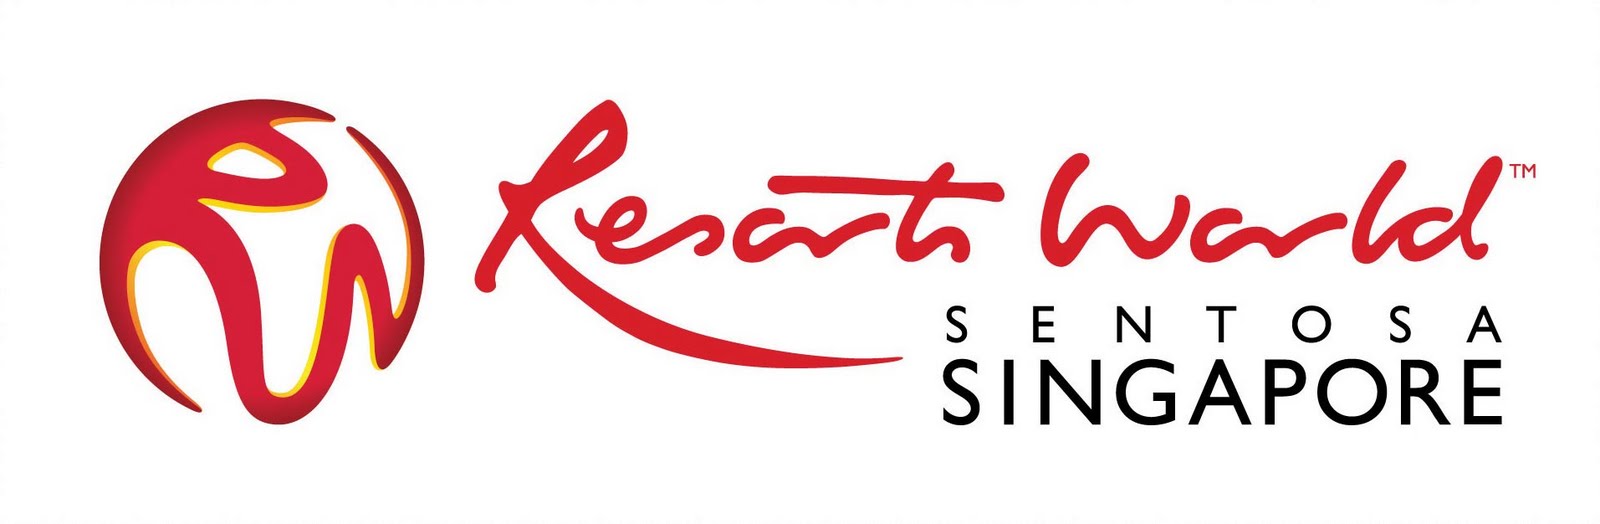 Genting Singapore Logo PNG - 111464